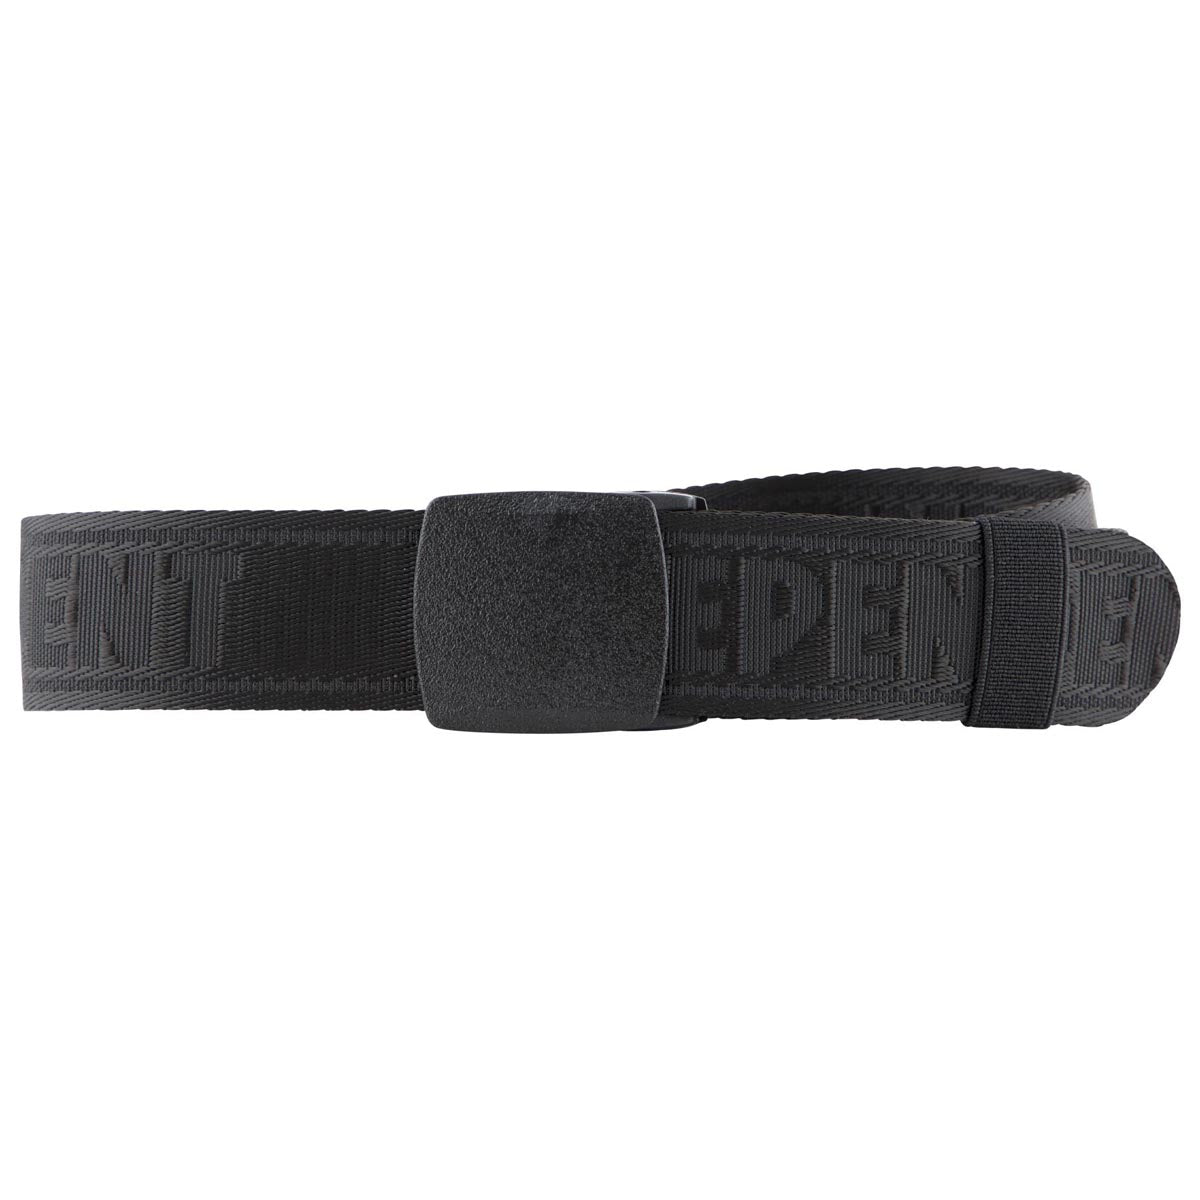 Independent Bar Repeat Web Belt - Black image 1